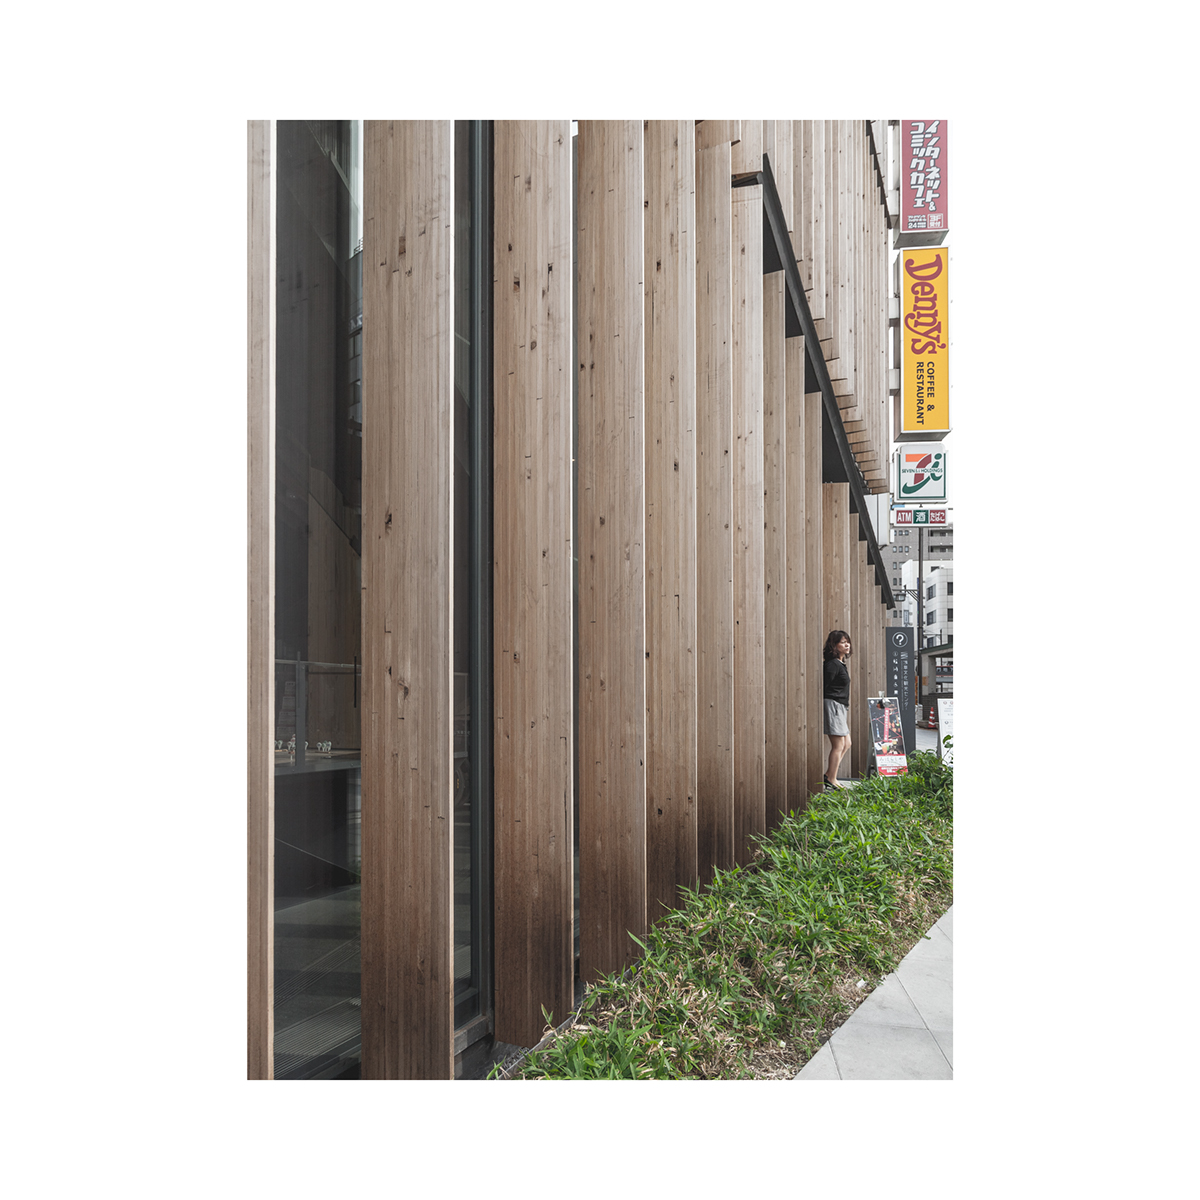 Adobe Portfolio Kengo Kuma japan Asakusa tokyo Lamellas facade Coast Coastarc Rasmus Hjortshoj